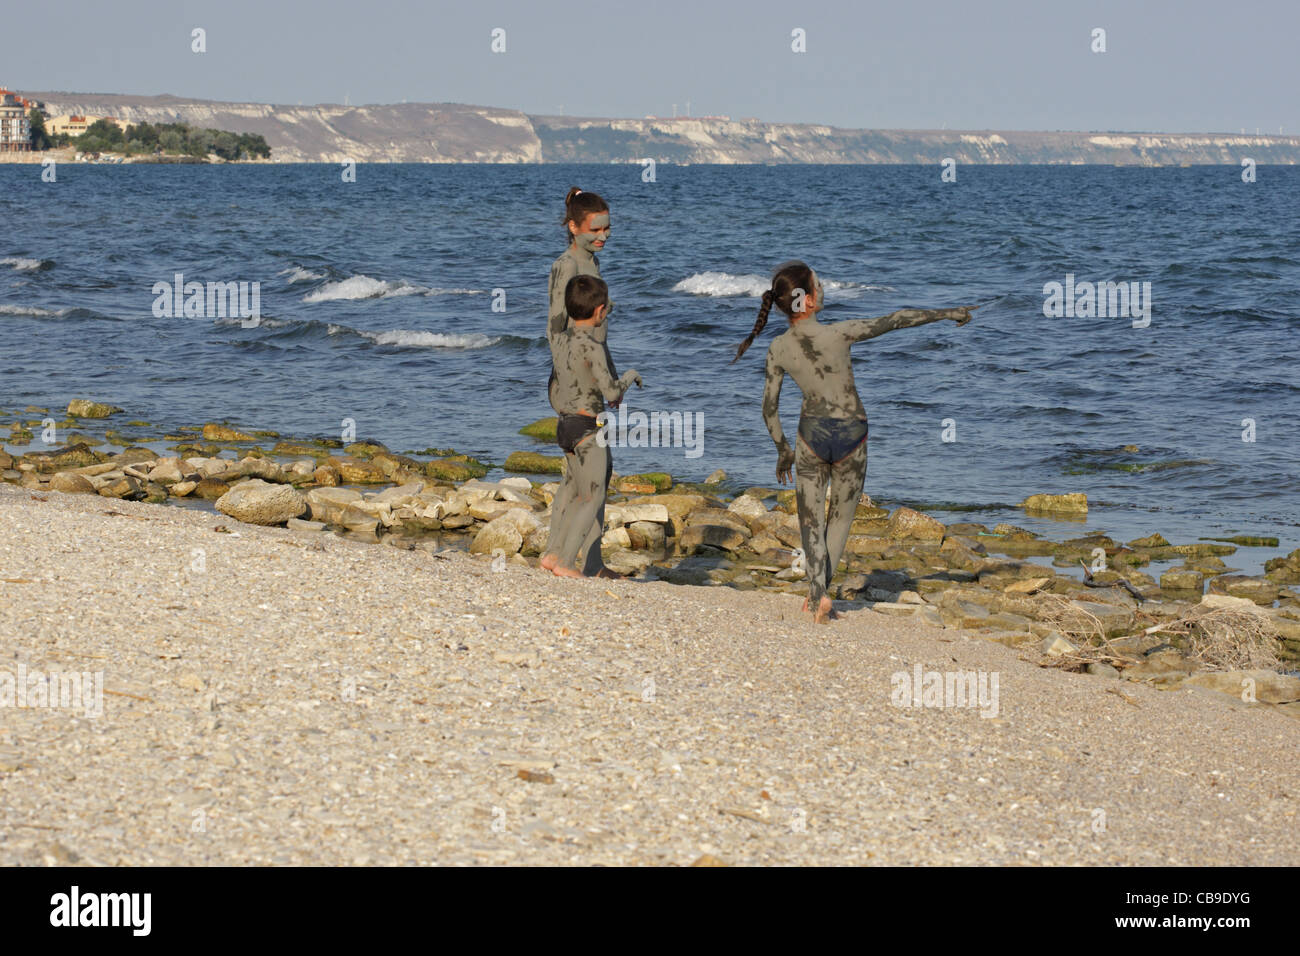 Kinder mit heilendem Schlamm bedeckt spielen am Strand, Tuzlata Resort in der Nähe von Stadt Balchik, Schwarzmeerküste, Bulgarien Stockfoto